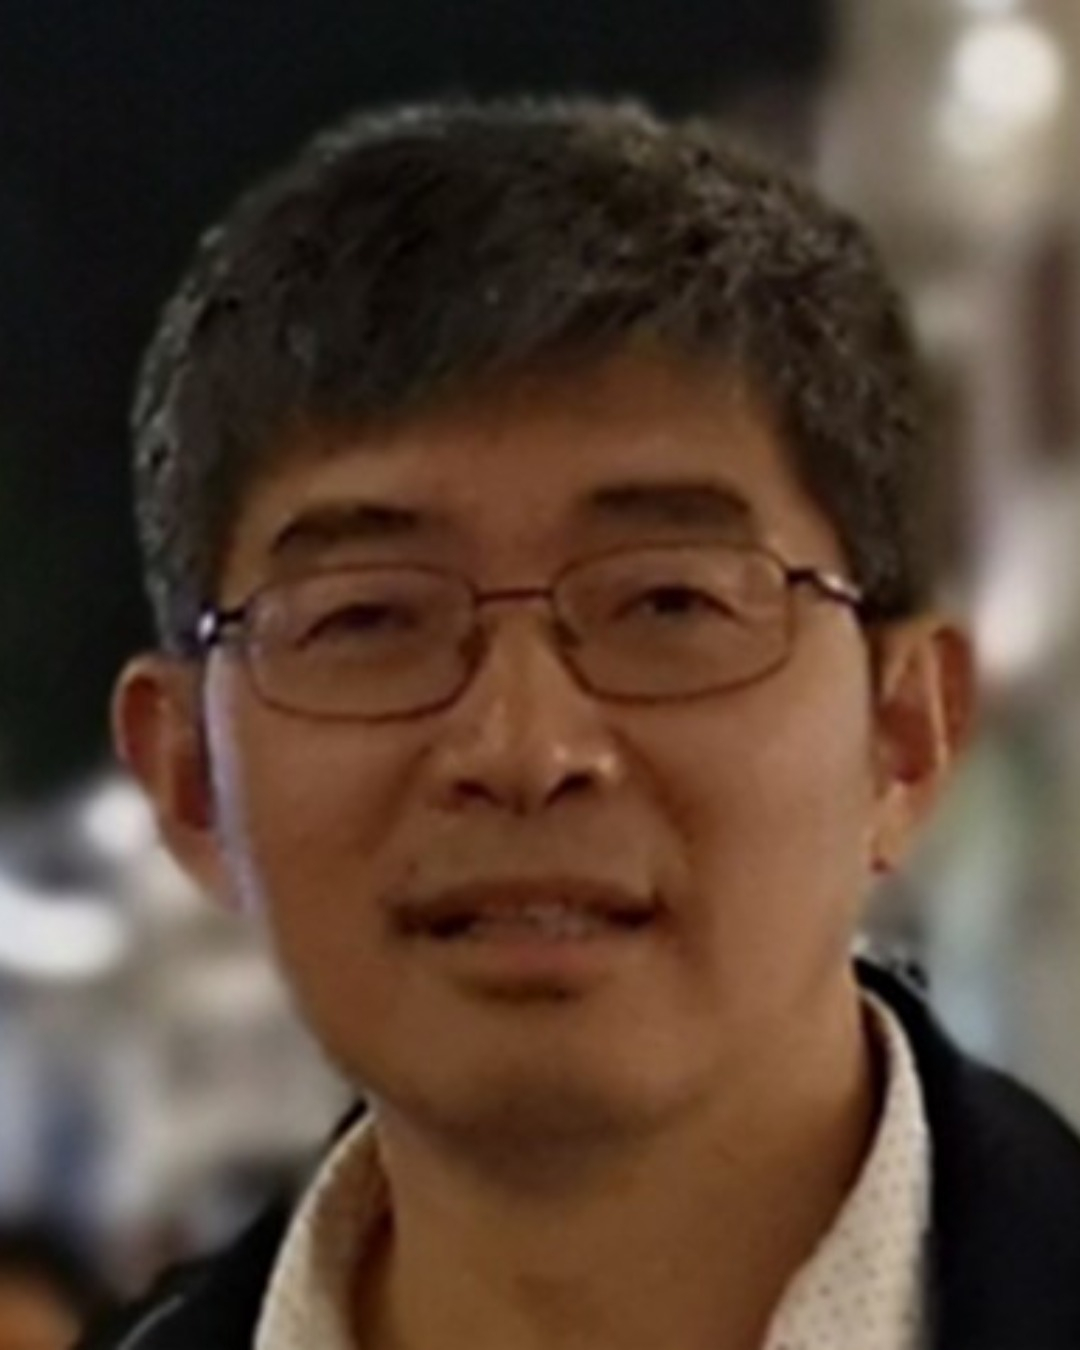 Edward Chen